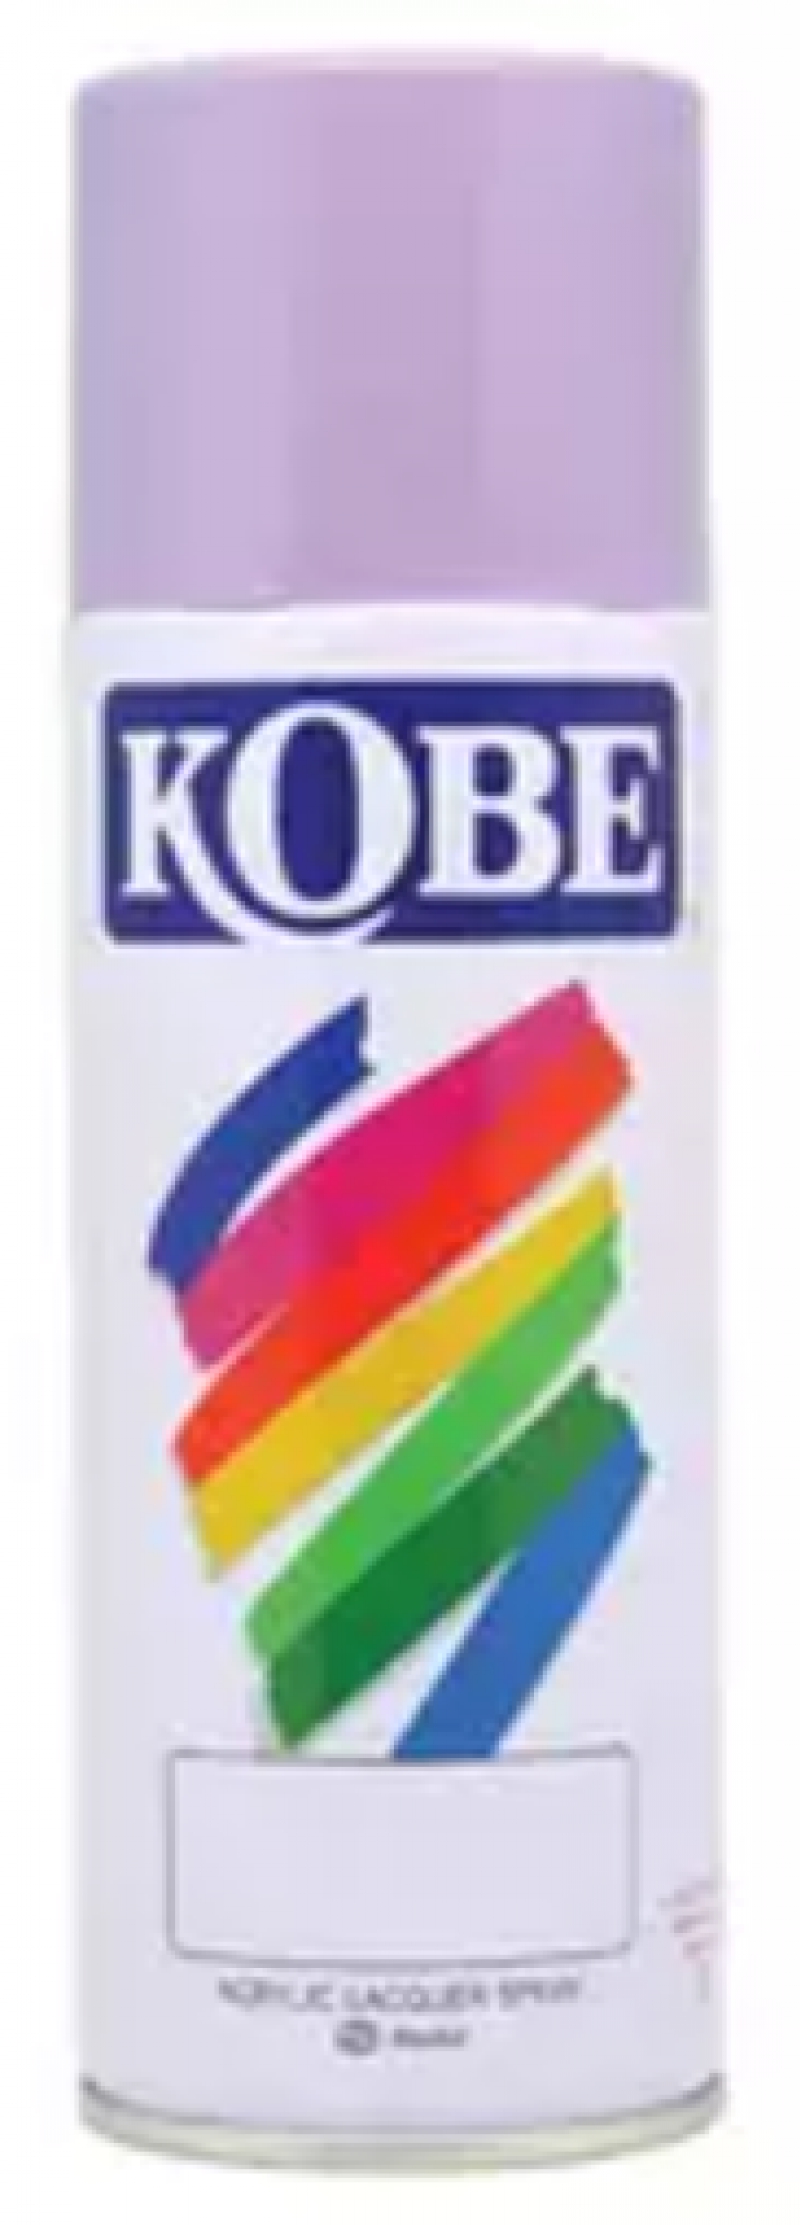 สเปรย์อเนกประสงค์ KOBE No. 940 สีม่วง